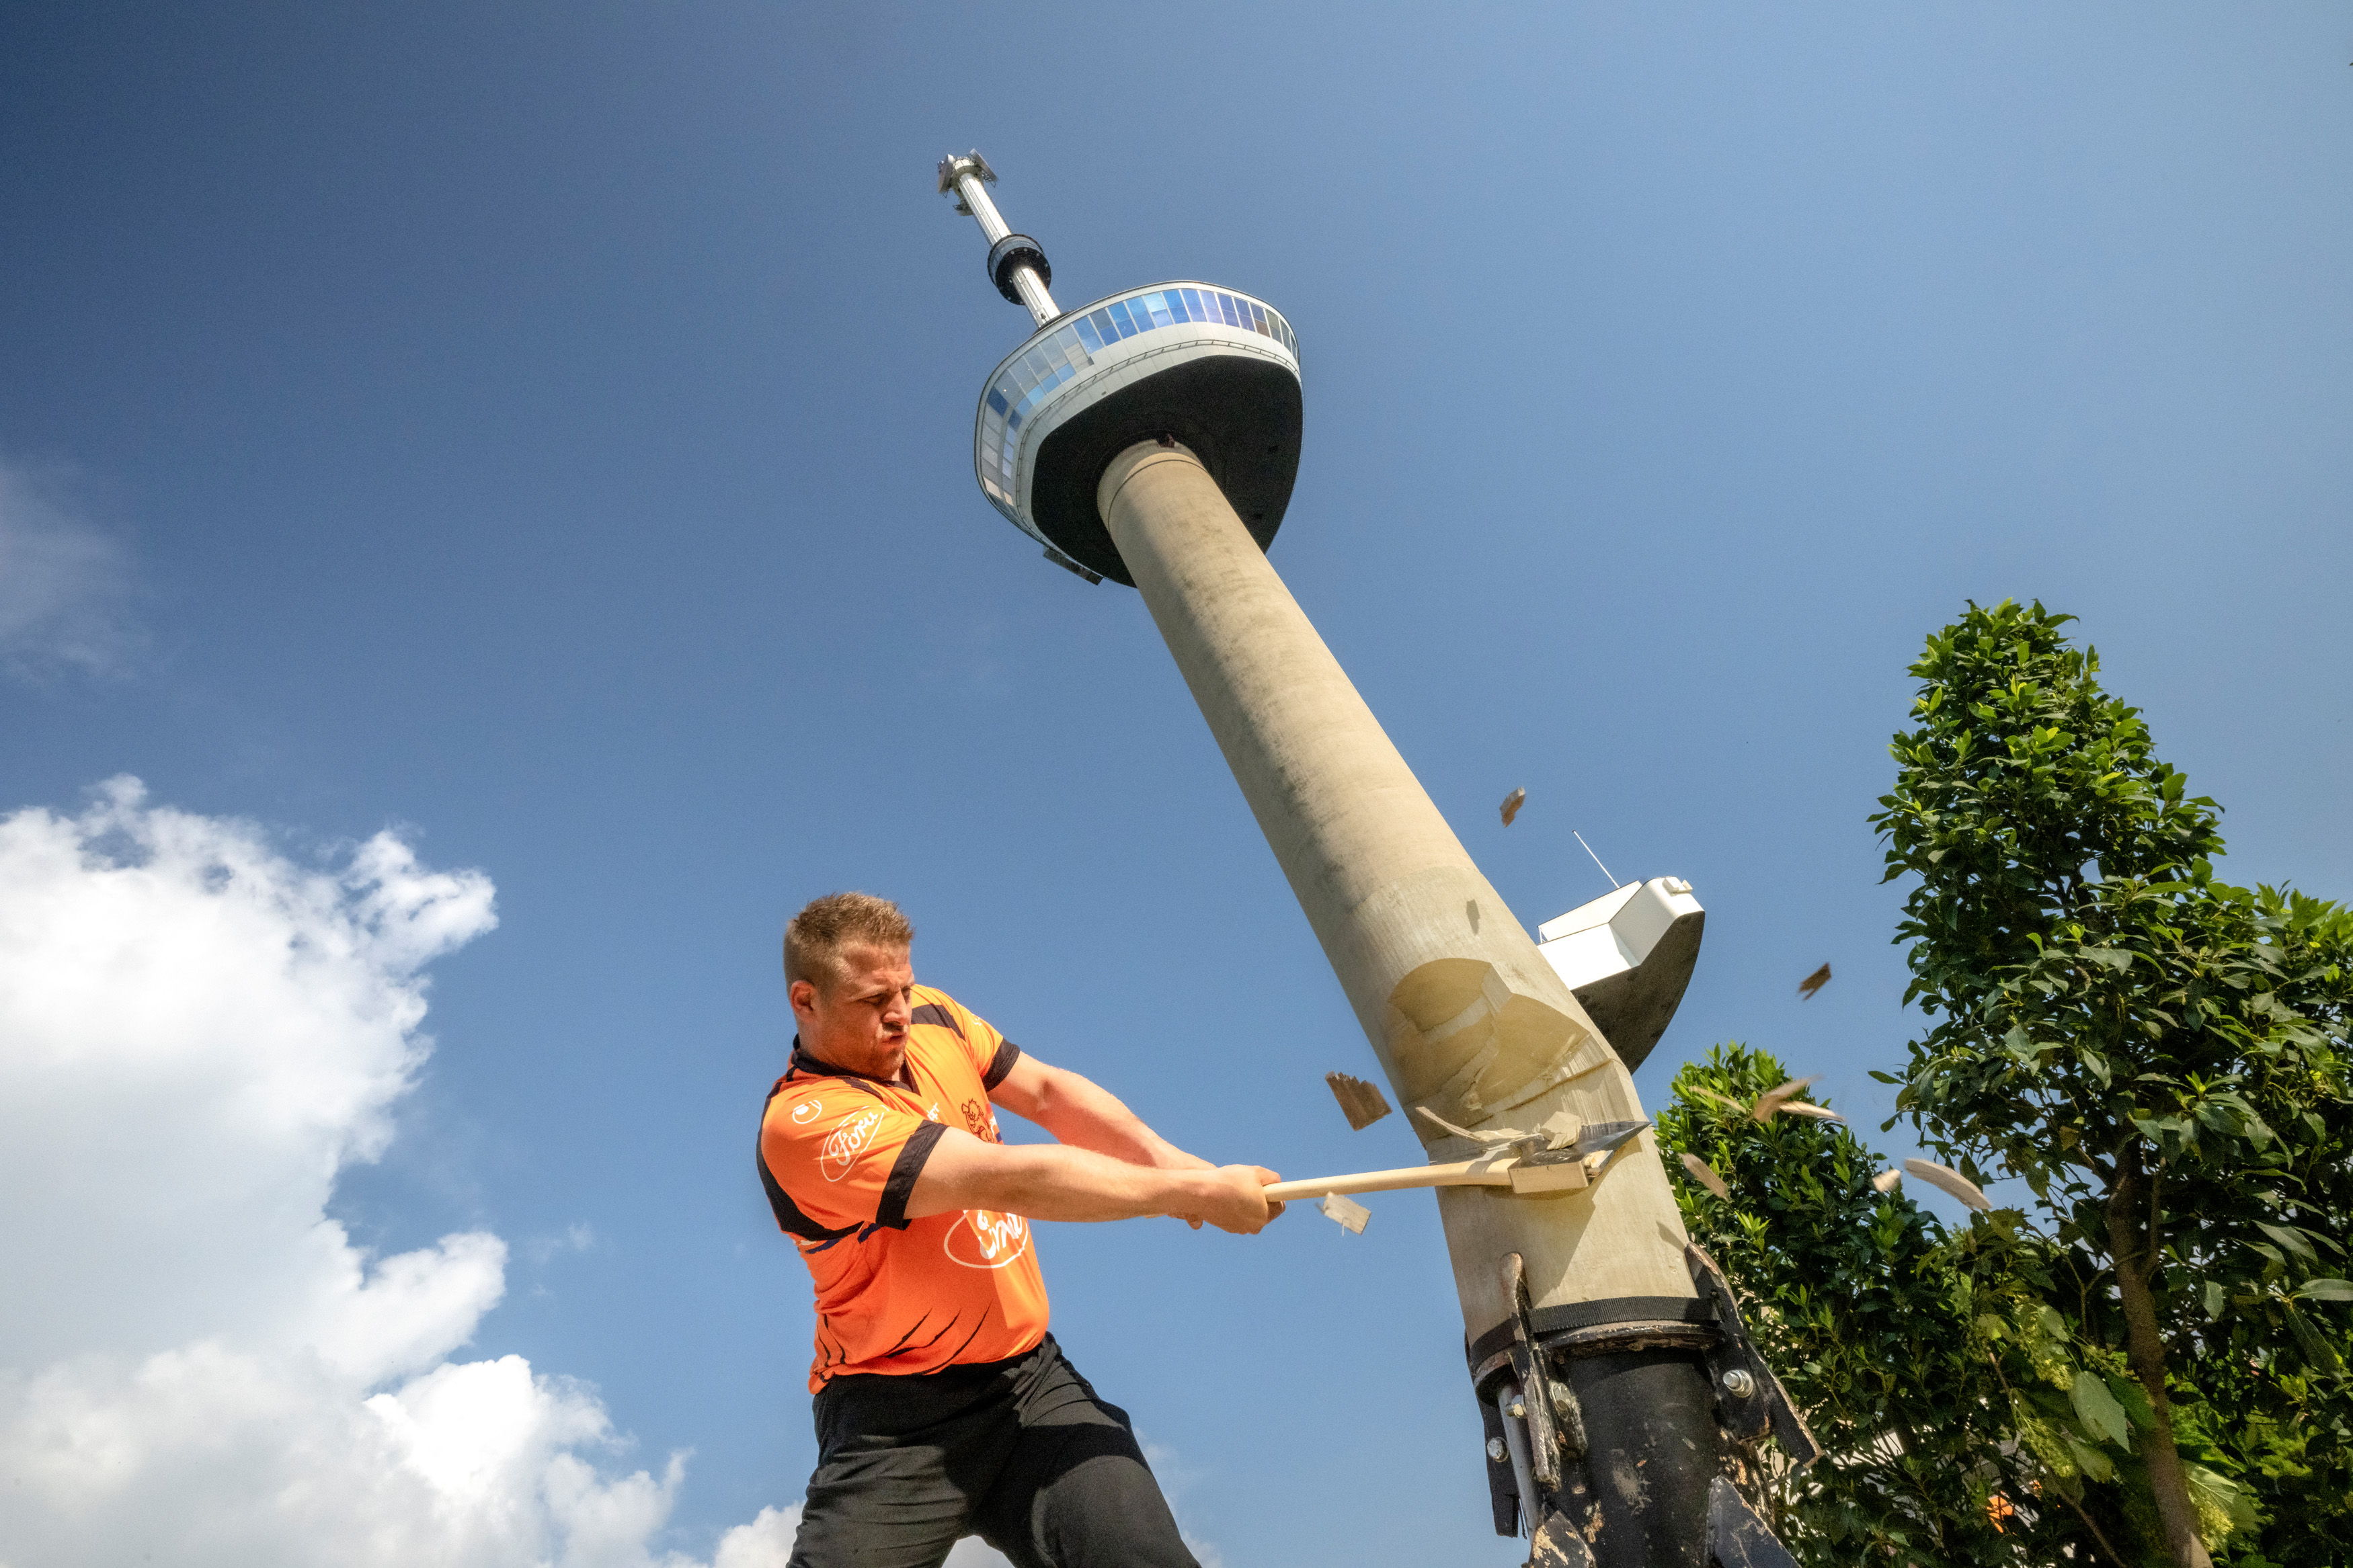 Le Néerlandais Redmer Knol porte tout l’espoir de ses compatriotes sur ses larges épaules. Sur la photo, il se met en mode compétition, affichant ses talents de bûcheron sur la célèbre Euromast Tower de Rotterdam.